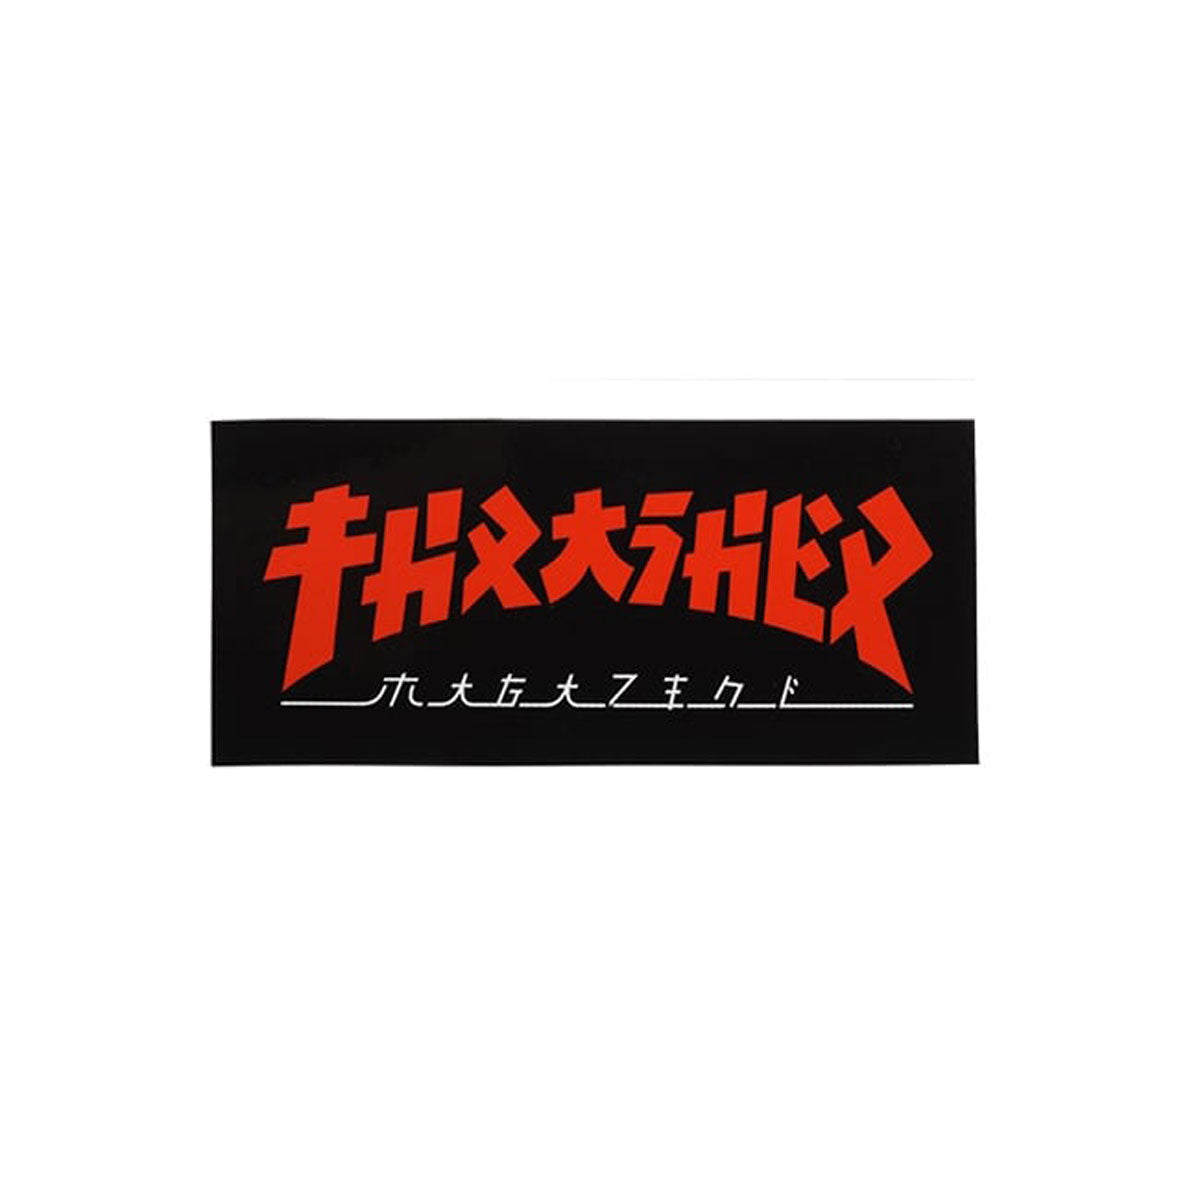 Thrasher Godzilla Sticker image 1